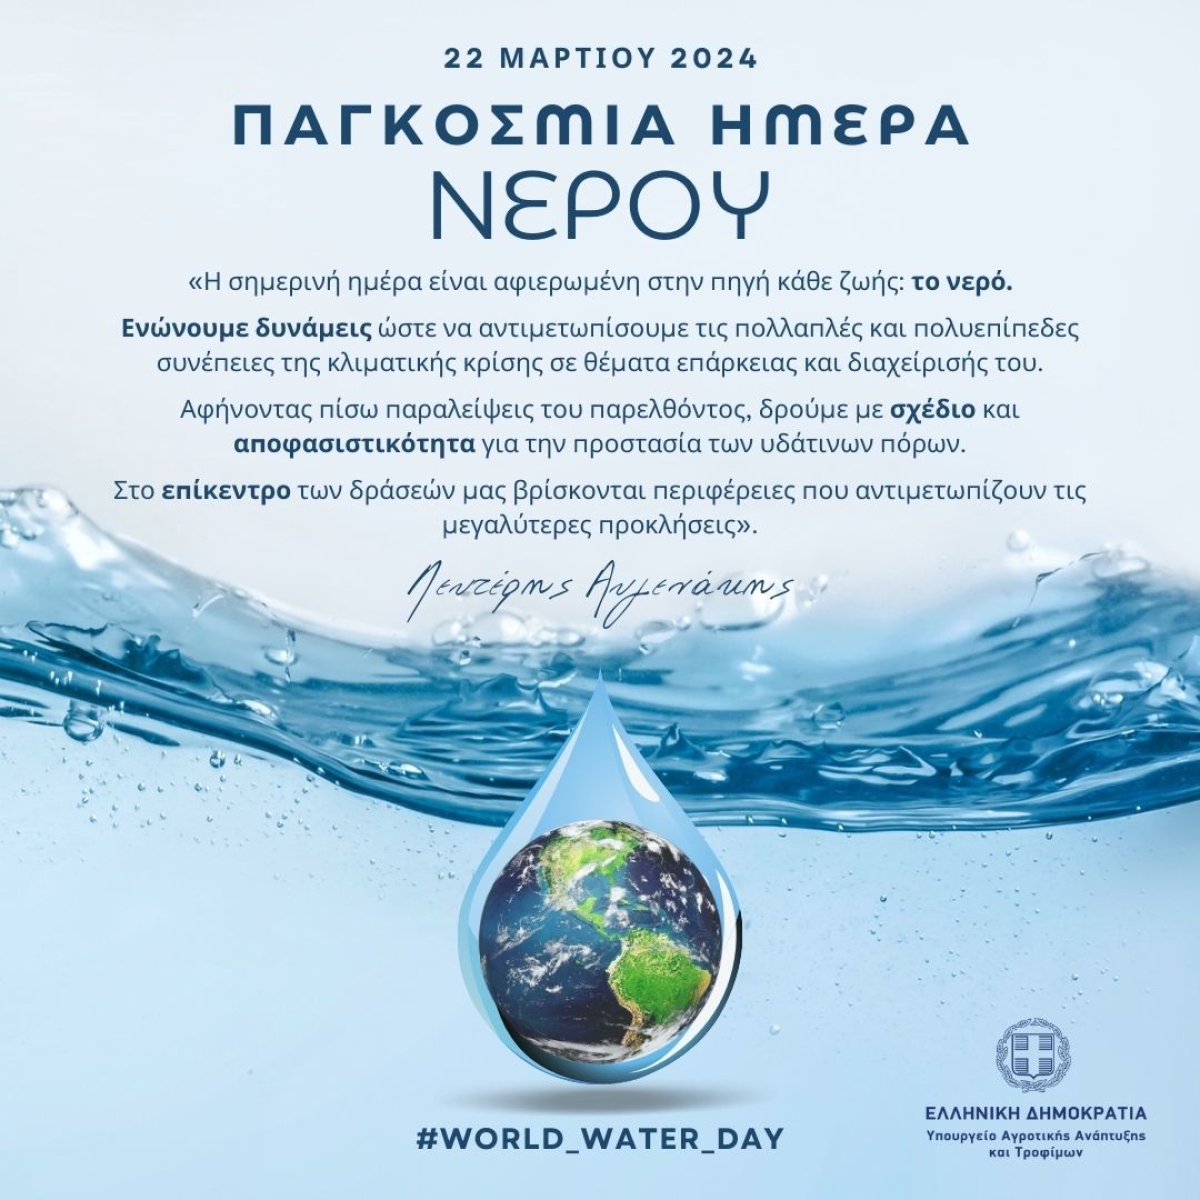 Ανάρτηση ΥπΑΑΤ, Λευτέρη Αυγενάκη για την Παγκόσμια Ημέρα Νερού